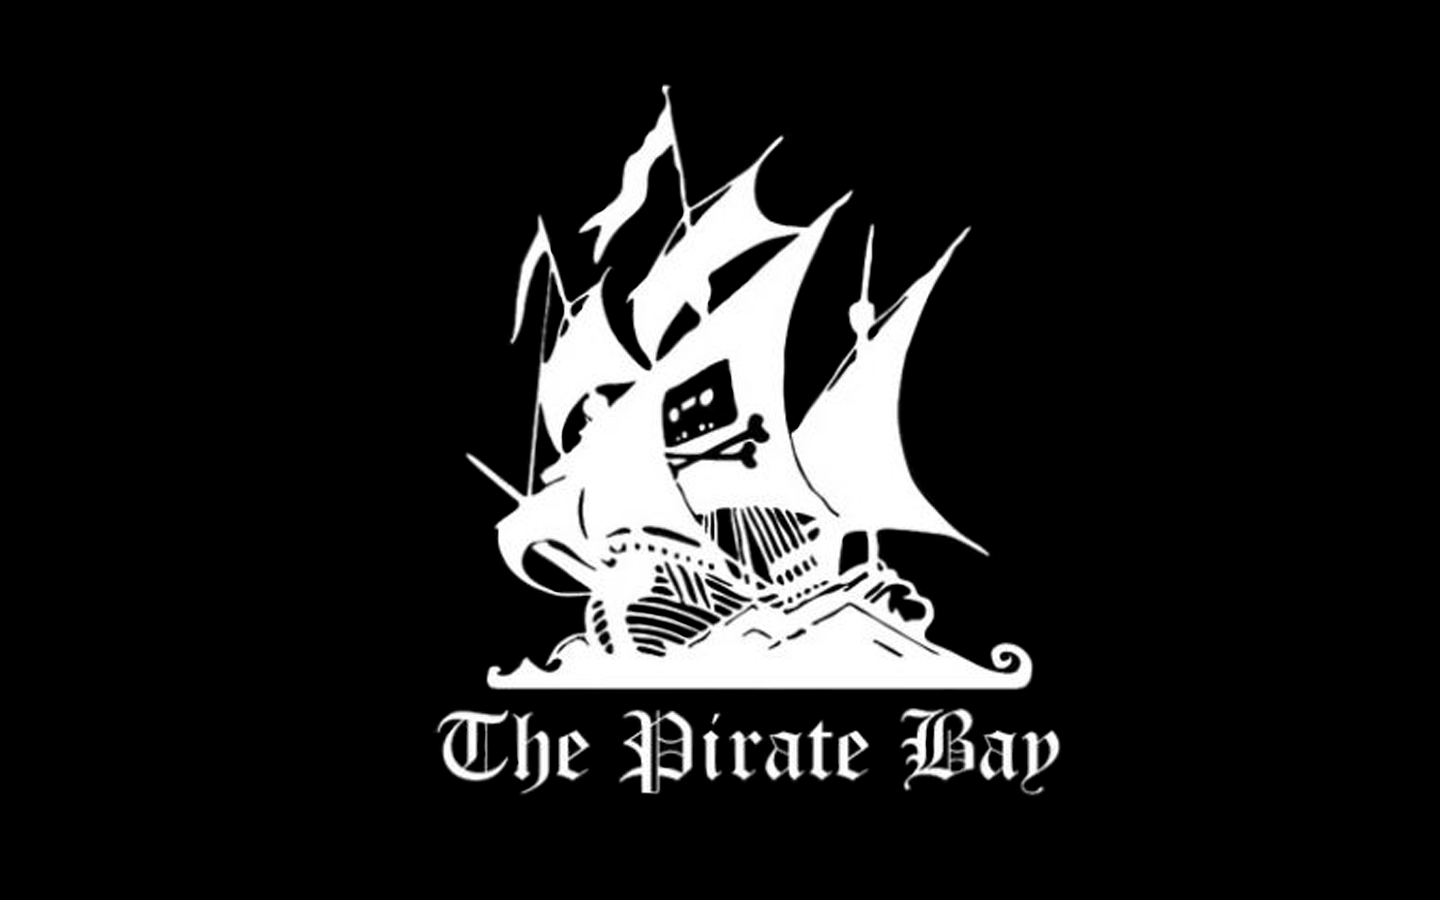 Piracy Logo - Wallpaper : The Pirate Bay, piracy, logo 1440x900 - kelvinkosman ...